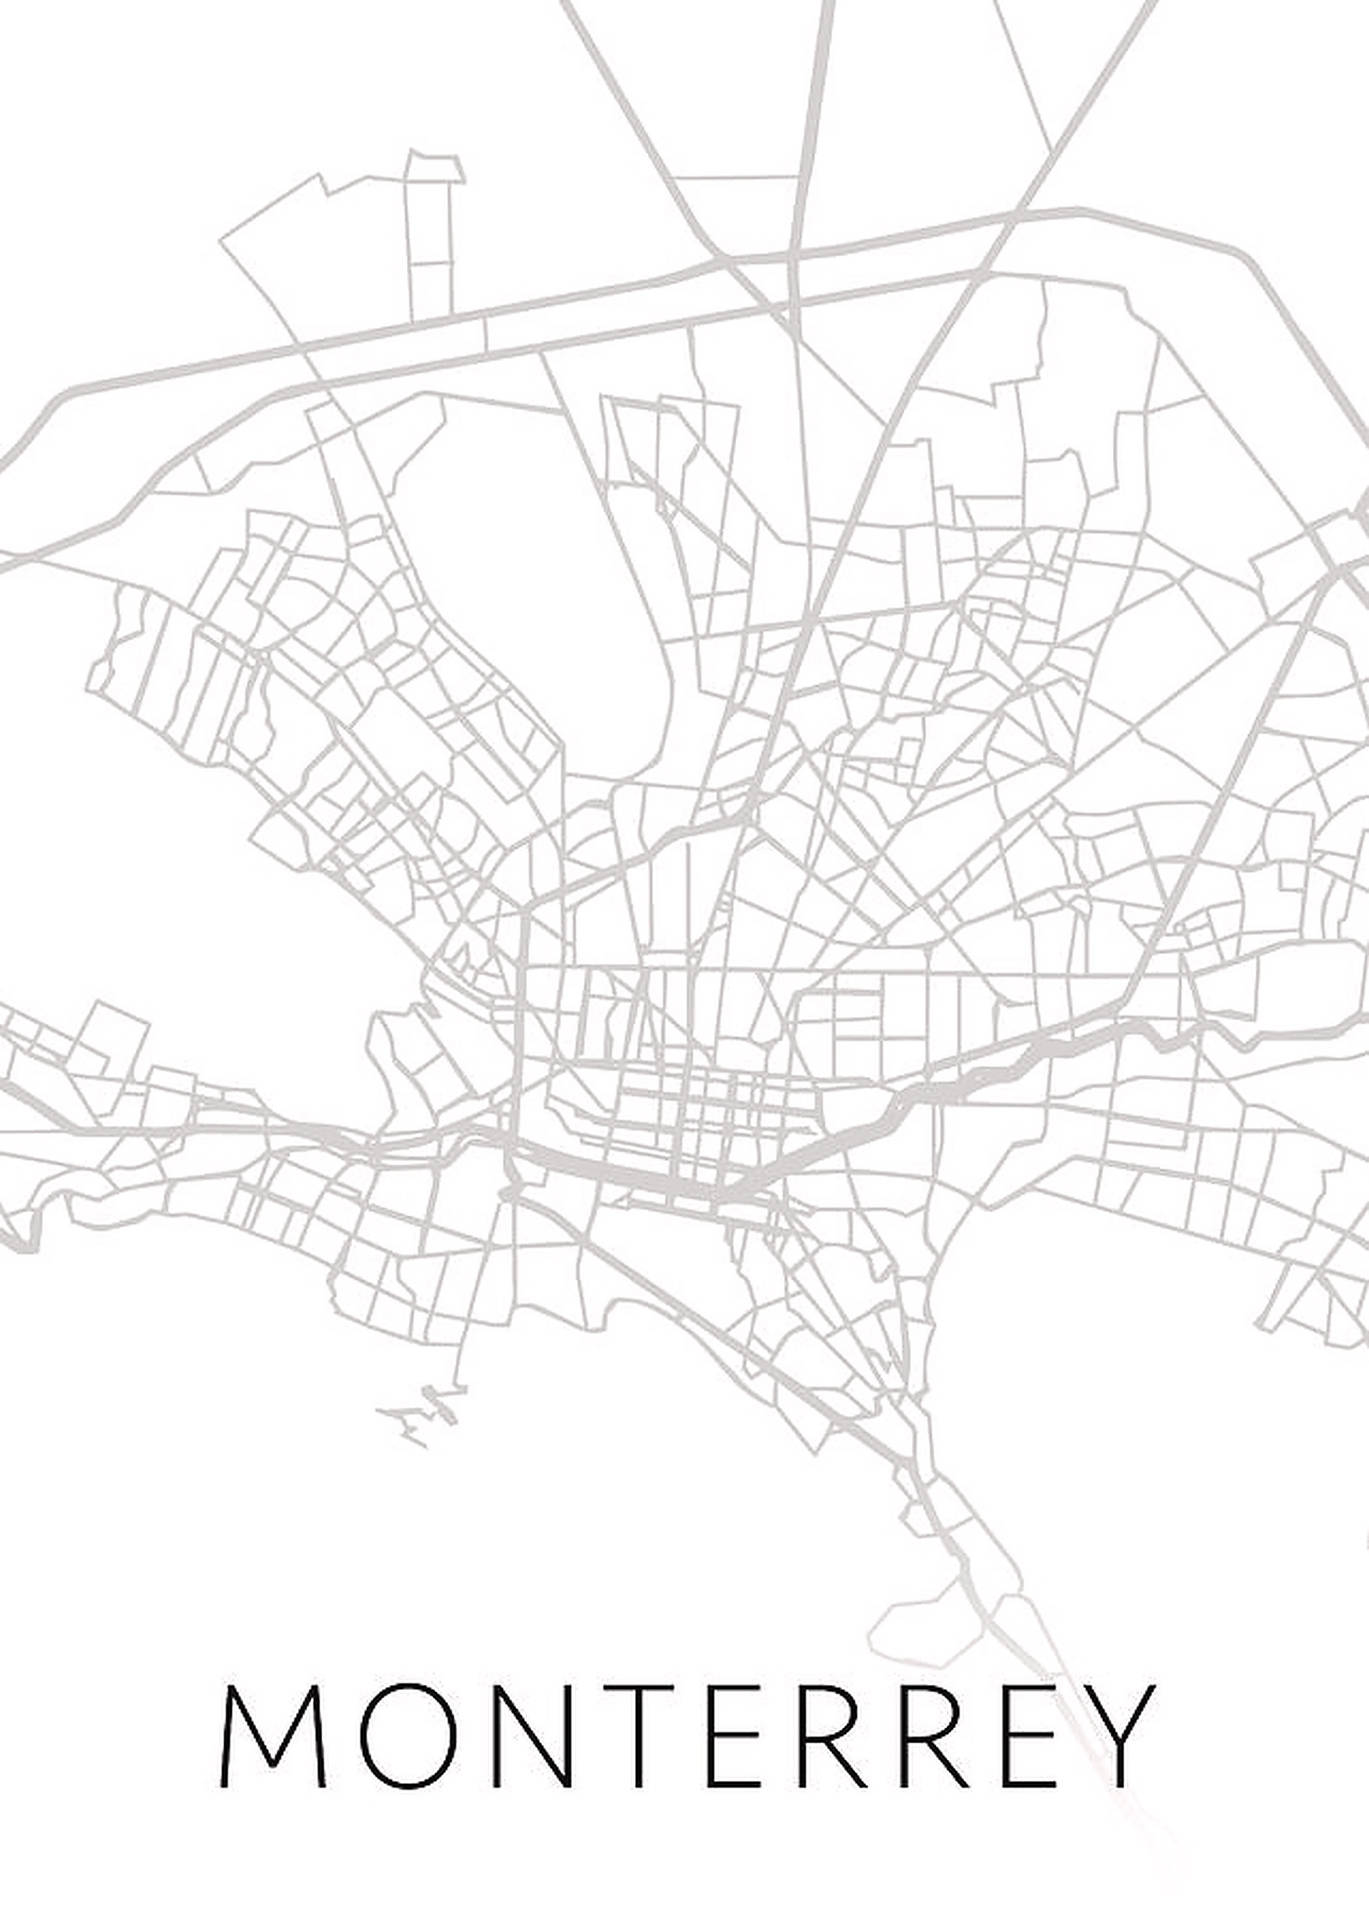 Monterrey City Blueprint